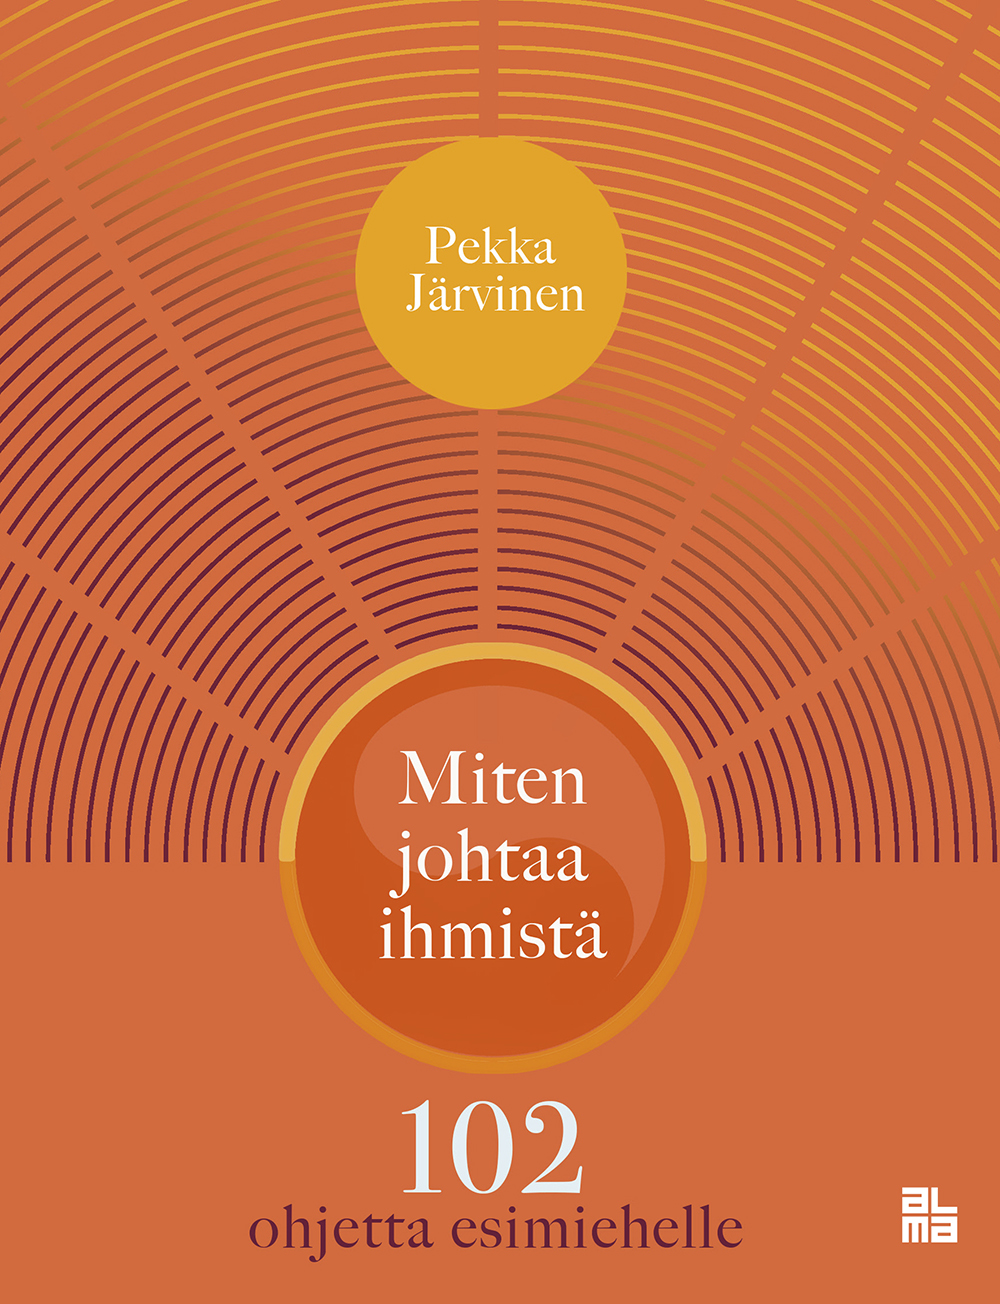 Järvinen, Pekka - Miten johtaa ihmistä: 102 ohjetta esimiehelle, e-bok